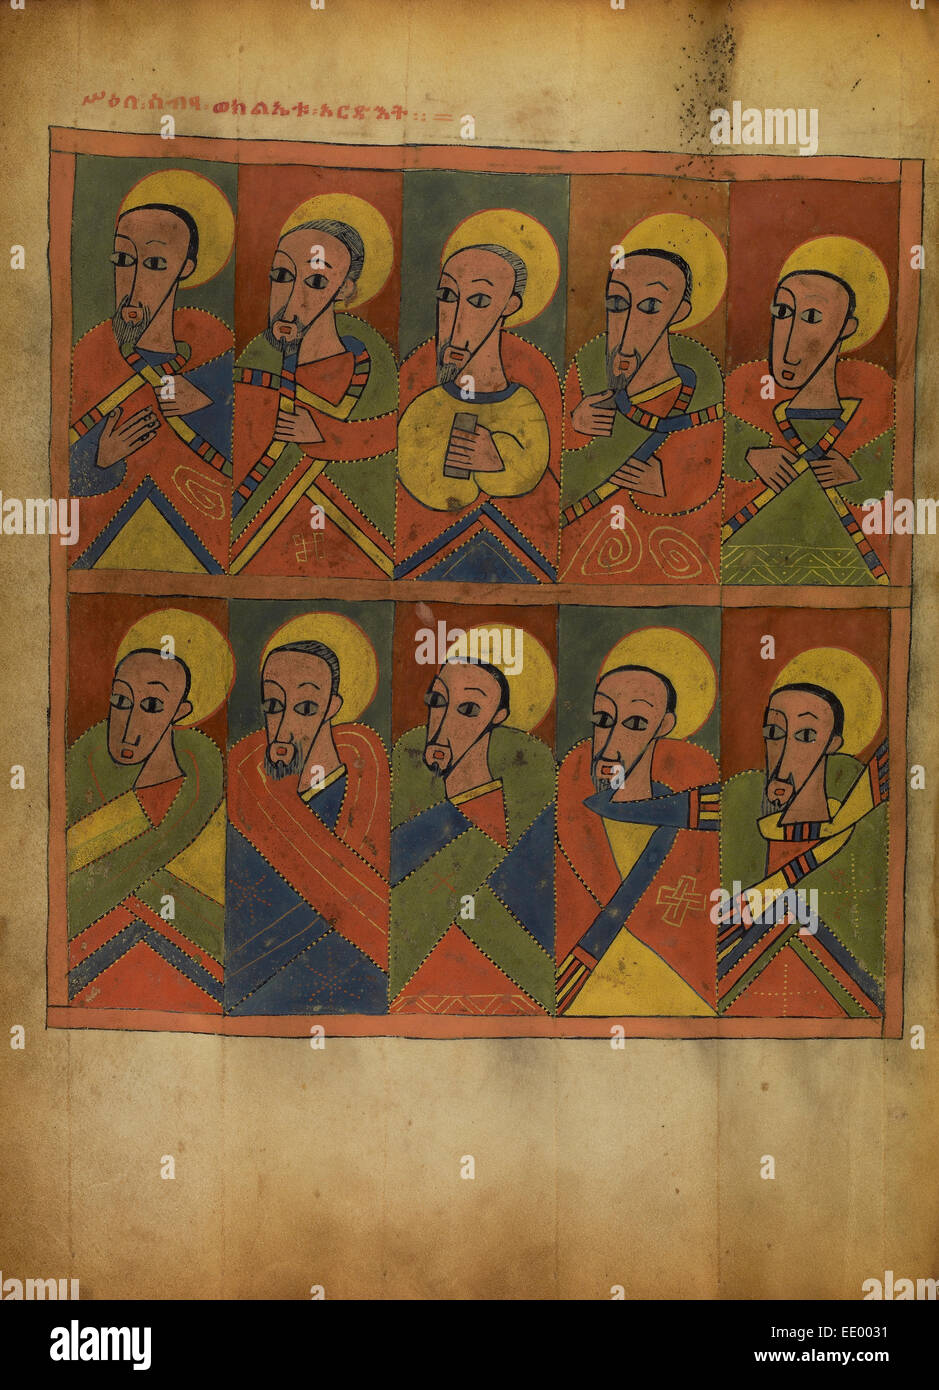 Die zweiundsiebzig jünger; Unbekannt; Äthiopien, Afrika; etwa 1480-1520; Tempera auf Pergament Stockfoto